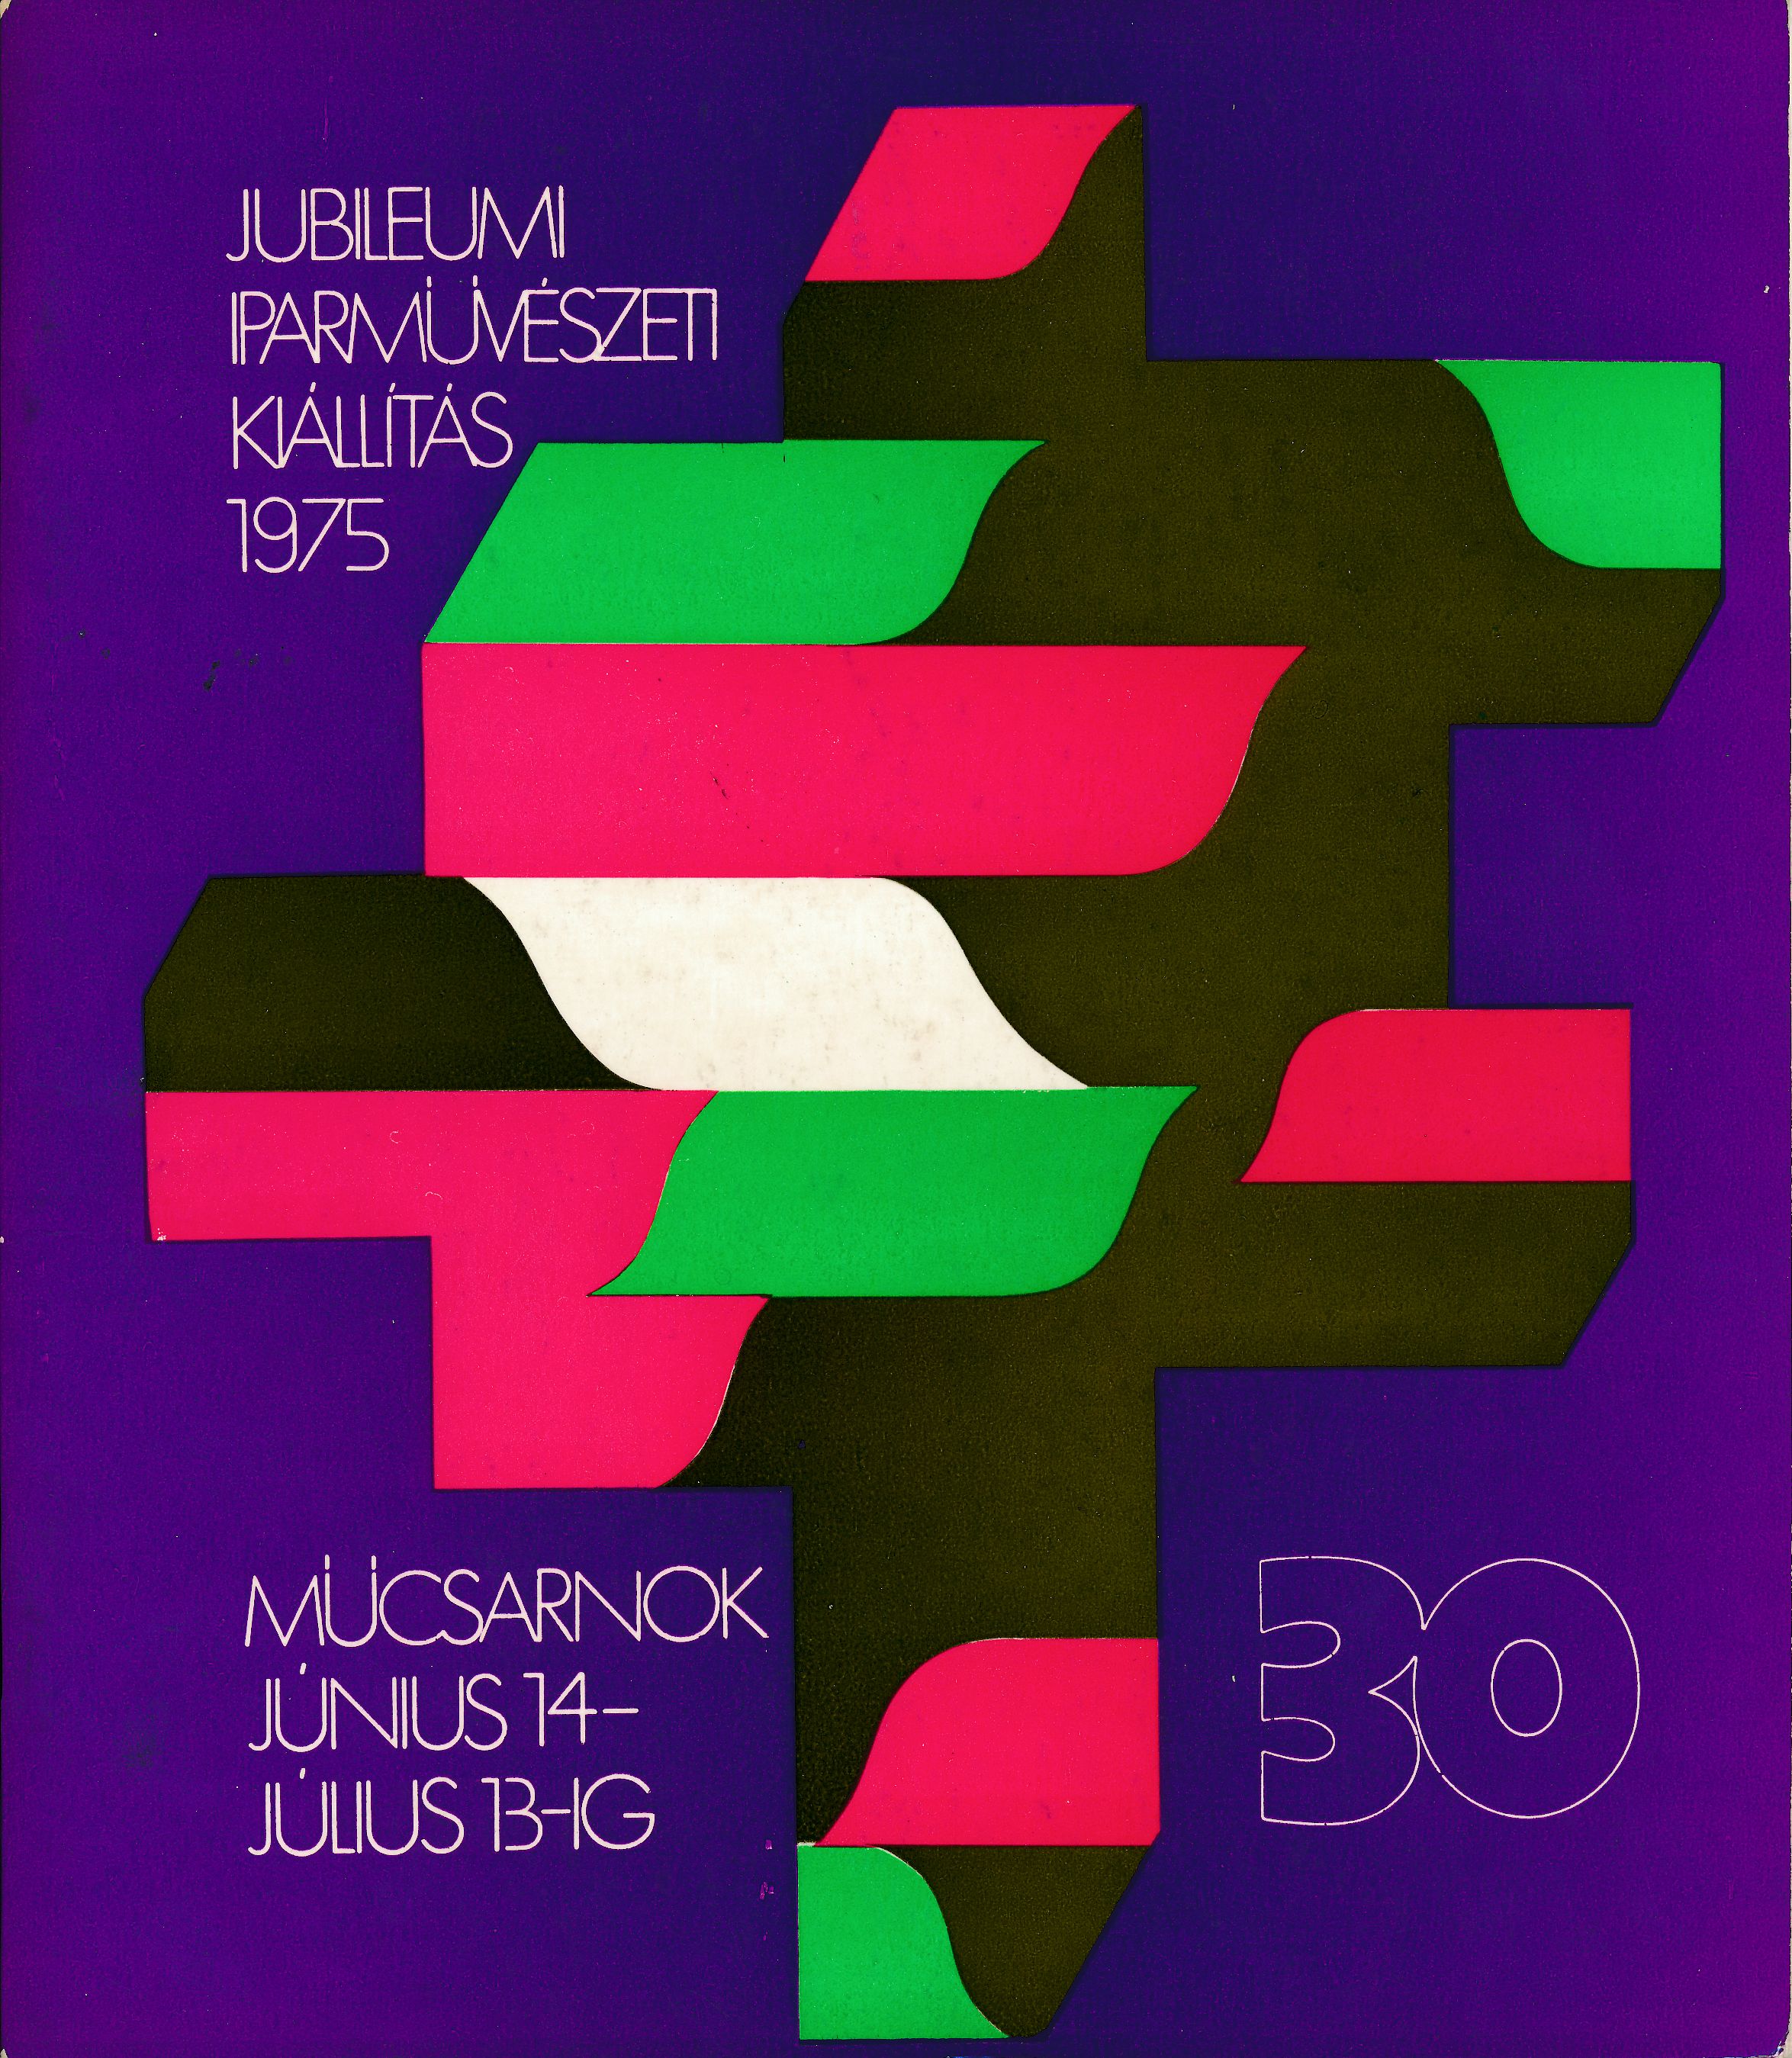 Jubileumi Iparművészeti Kiállítás 1975 (Design DigiTár – Iparművészeti archívum CC BY-NC-SA)